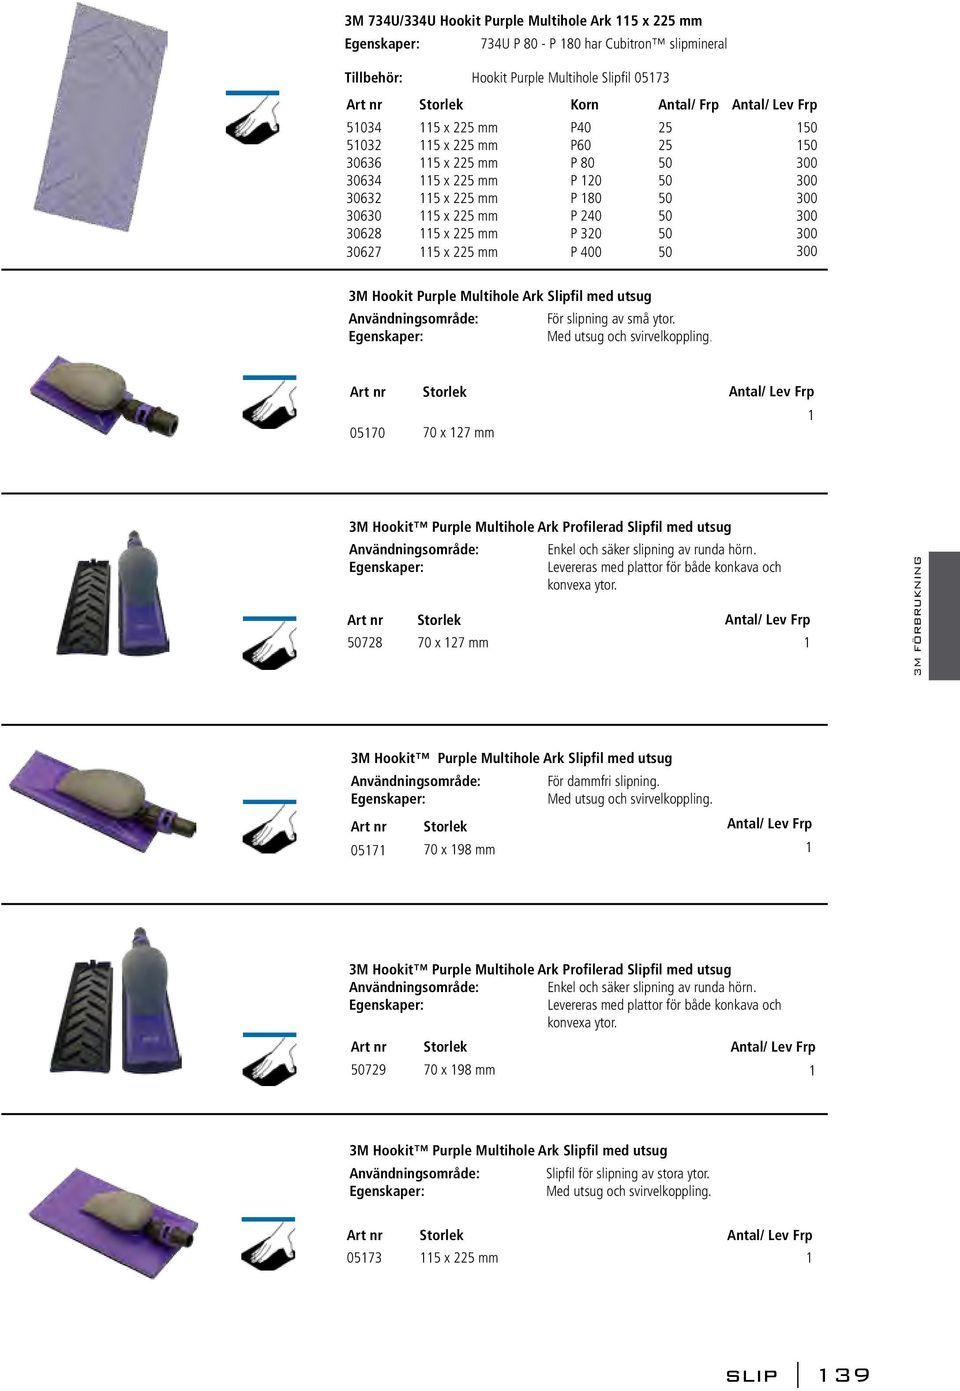 Frp 50 50 300 300 300 300 300 300 3M Hookit Purple Multihole Ark Slipfil med utsug Användningsområde: För slipning av små ytor. Egenskaper: Med utsug och svirvelkoppling.